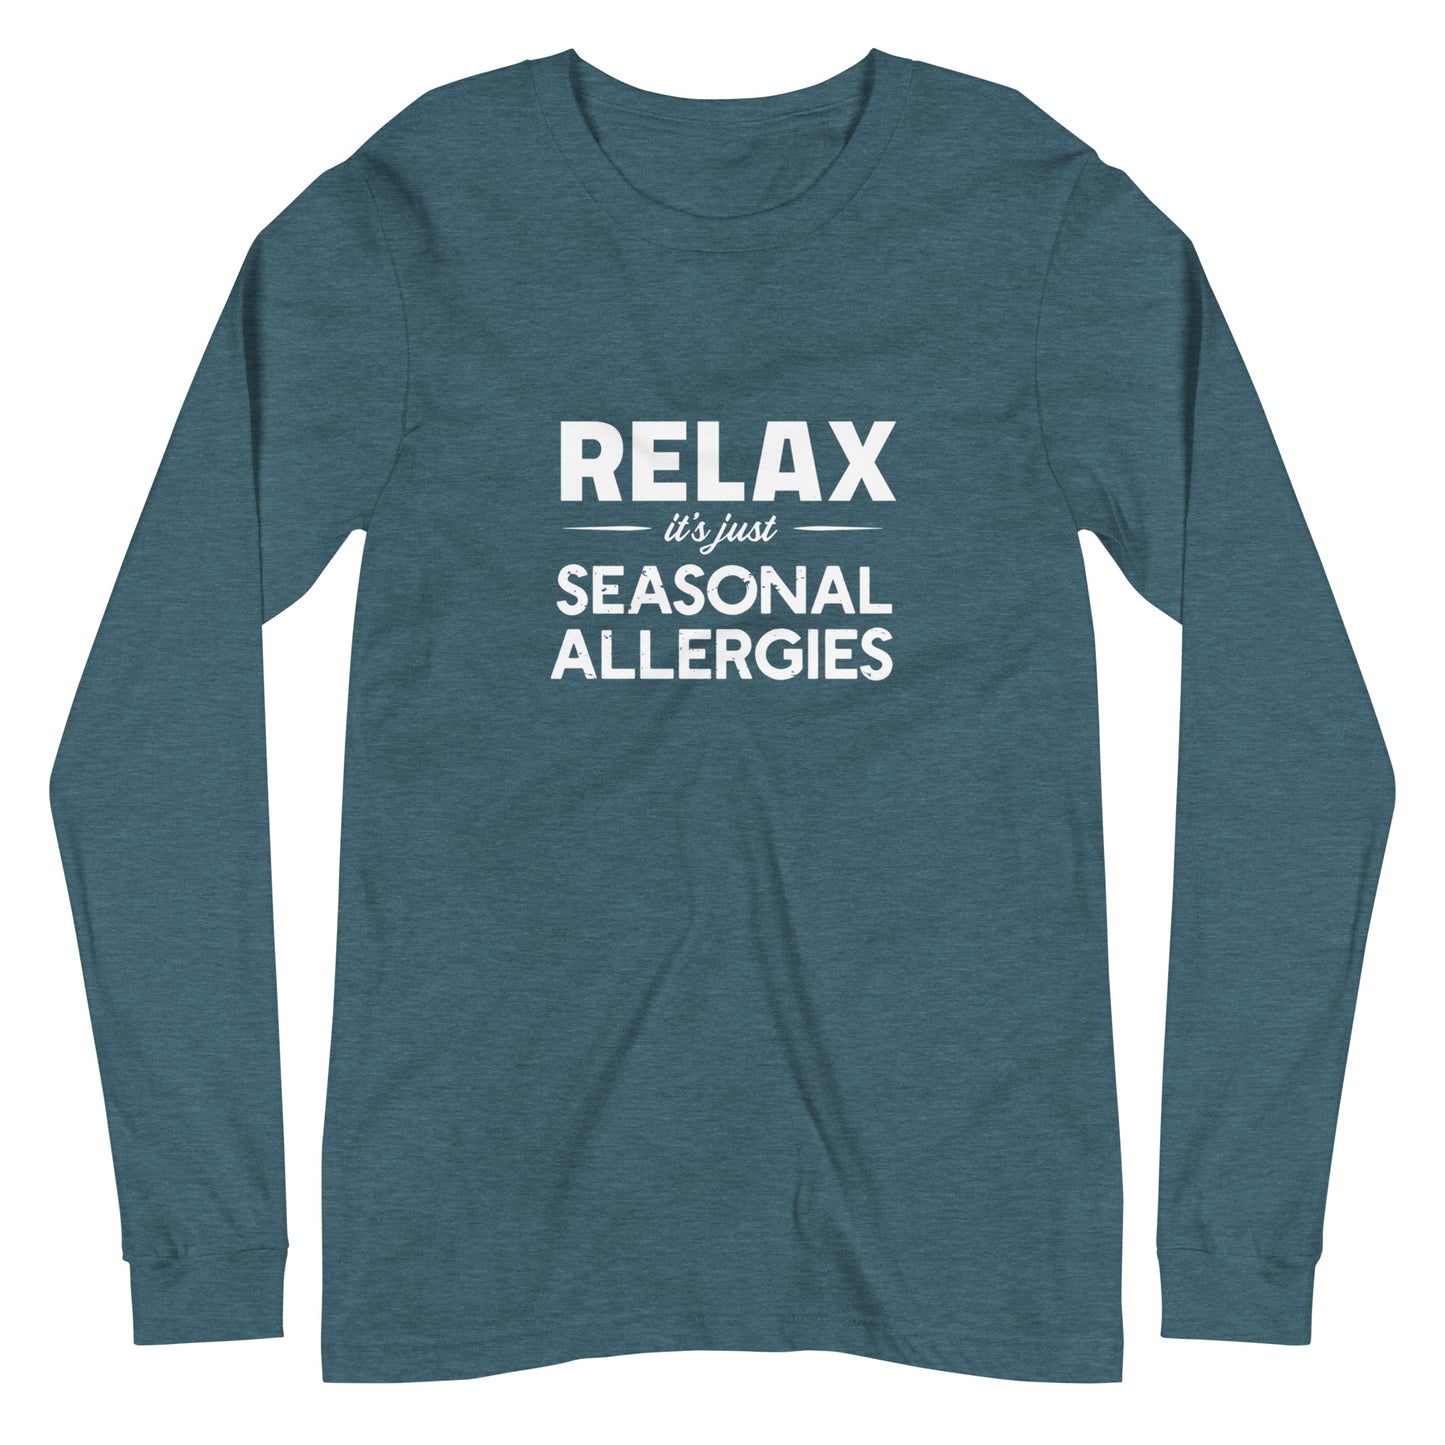 Seasonal Allergies - Bella + Canvas Long Sleeve Tee